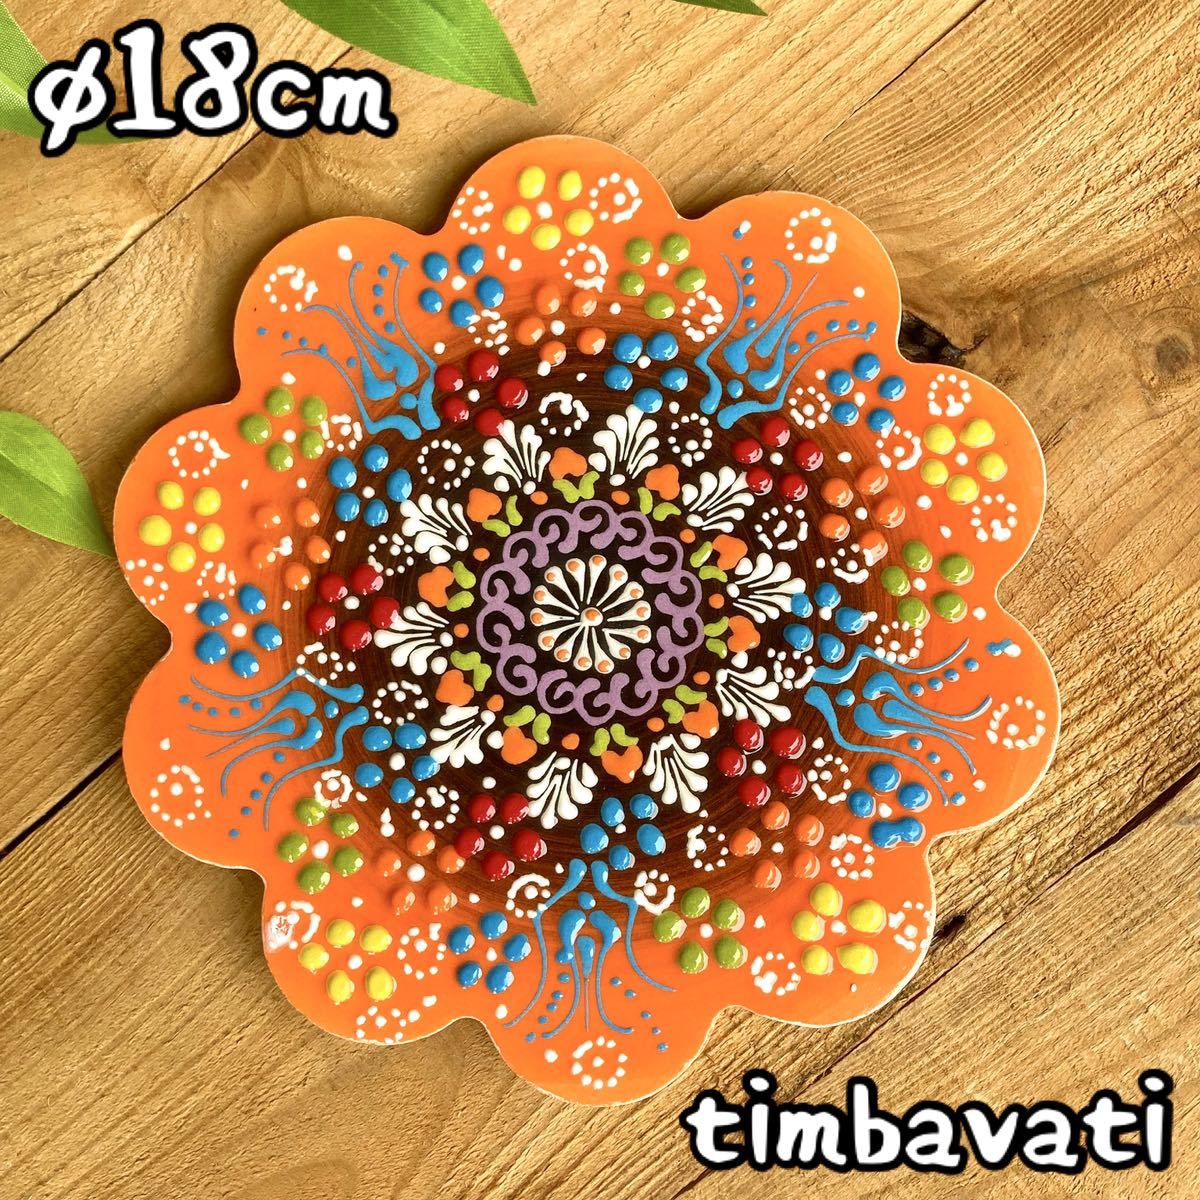 18cm* новый товар * Турция керамика коврик для посуды орнамент плитка * orange * ручная работа kyu жесткий ya керамика 024